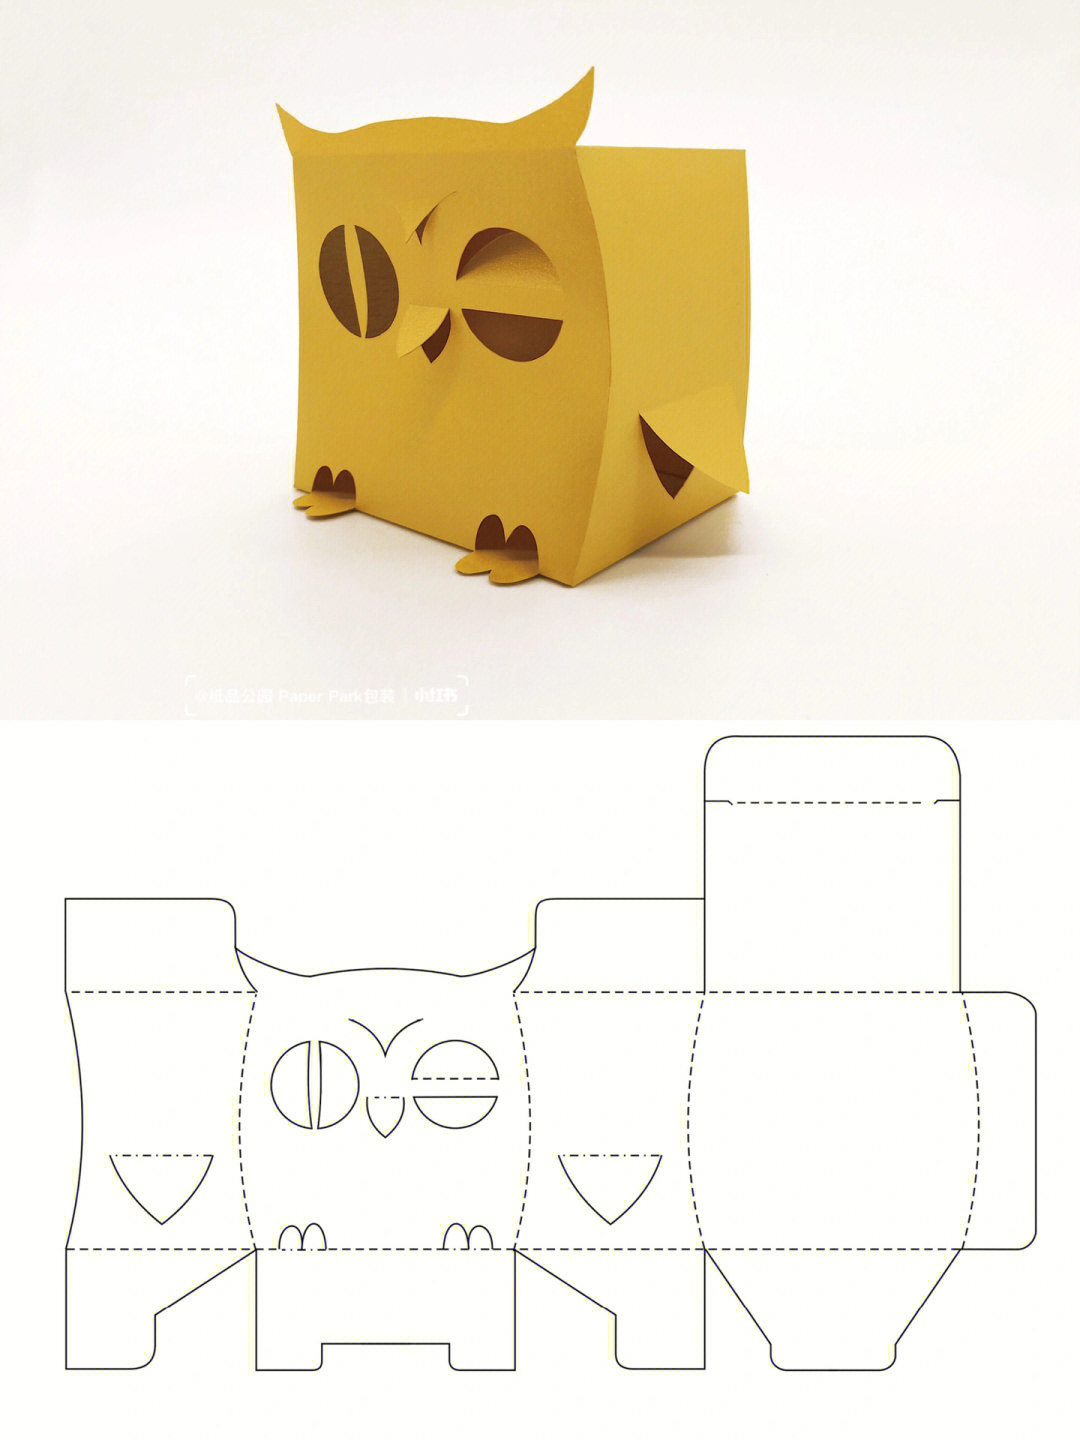 异形结构包装有趣的动物盒型02